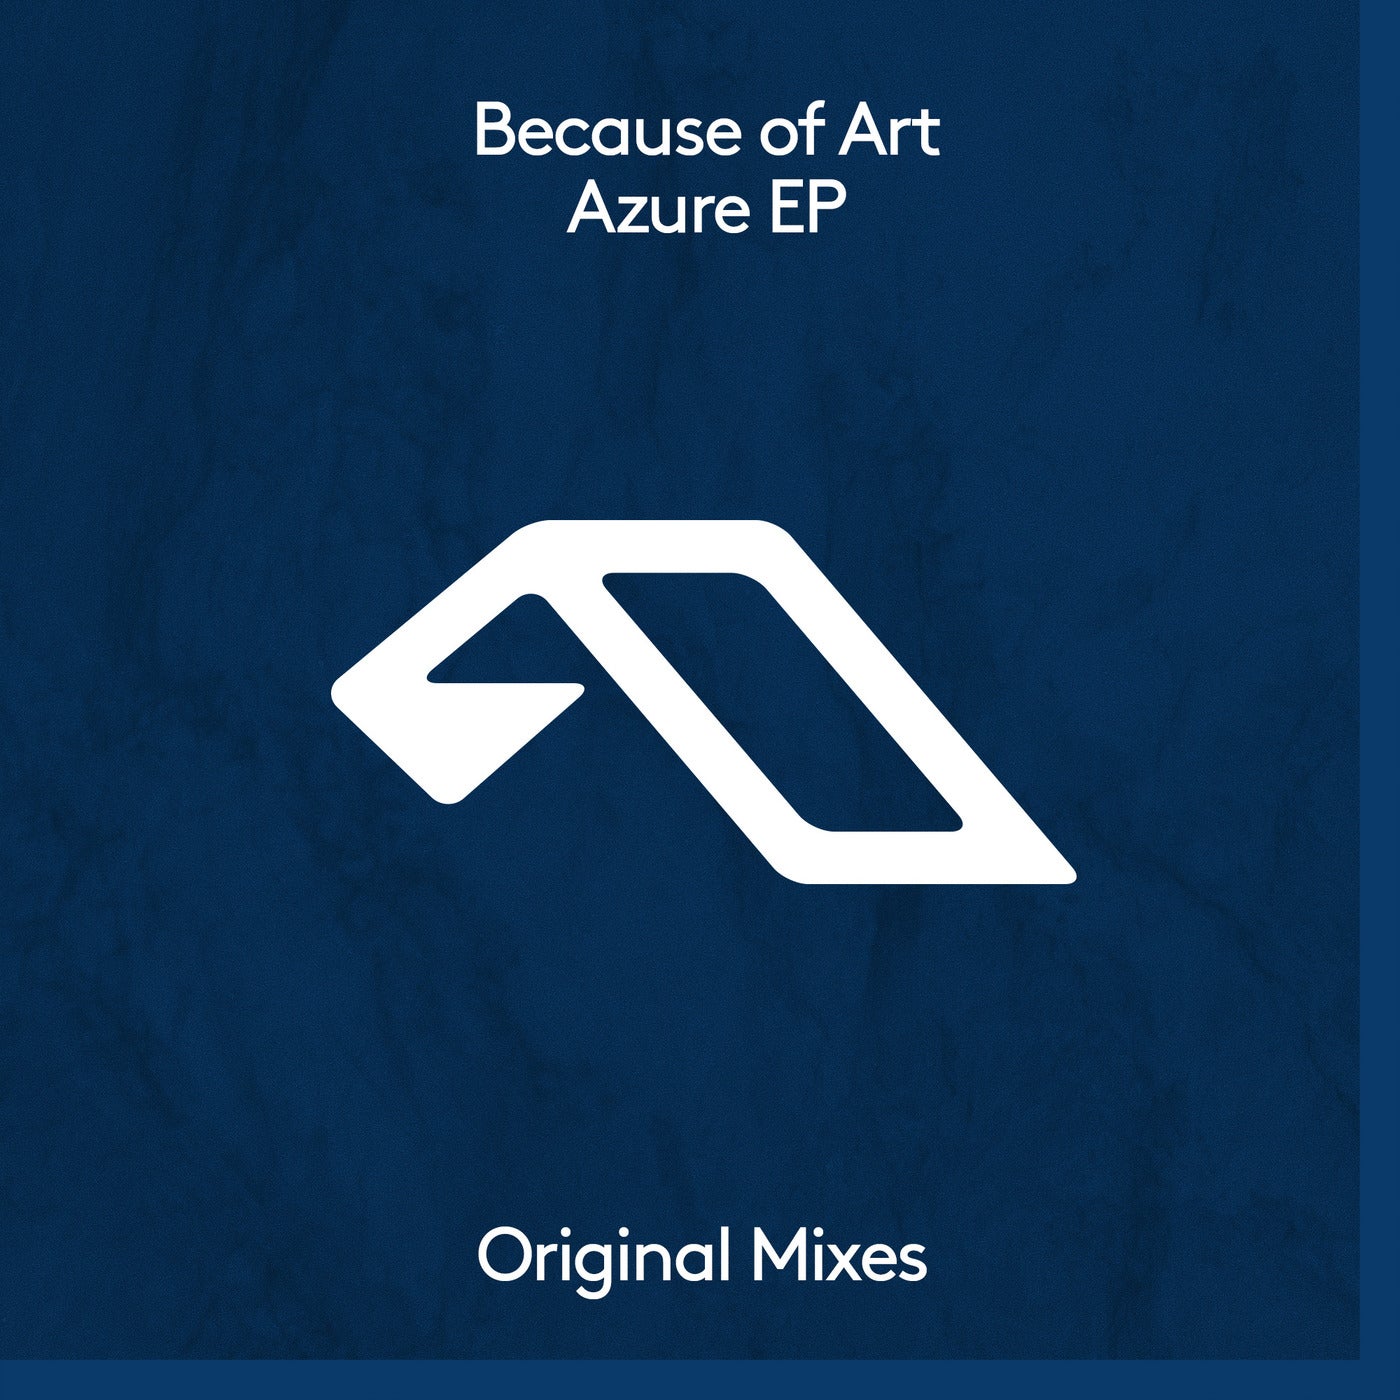 Azure EP